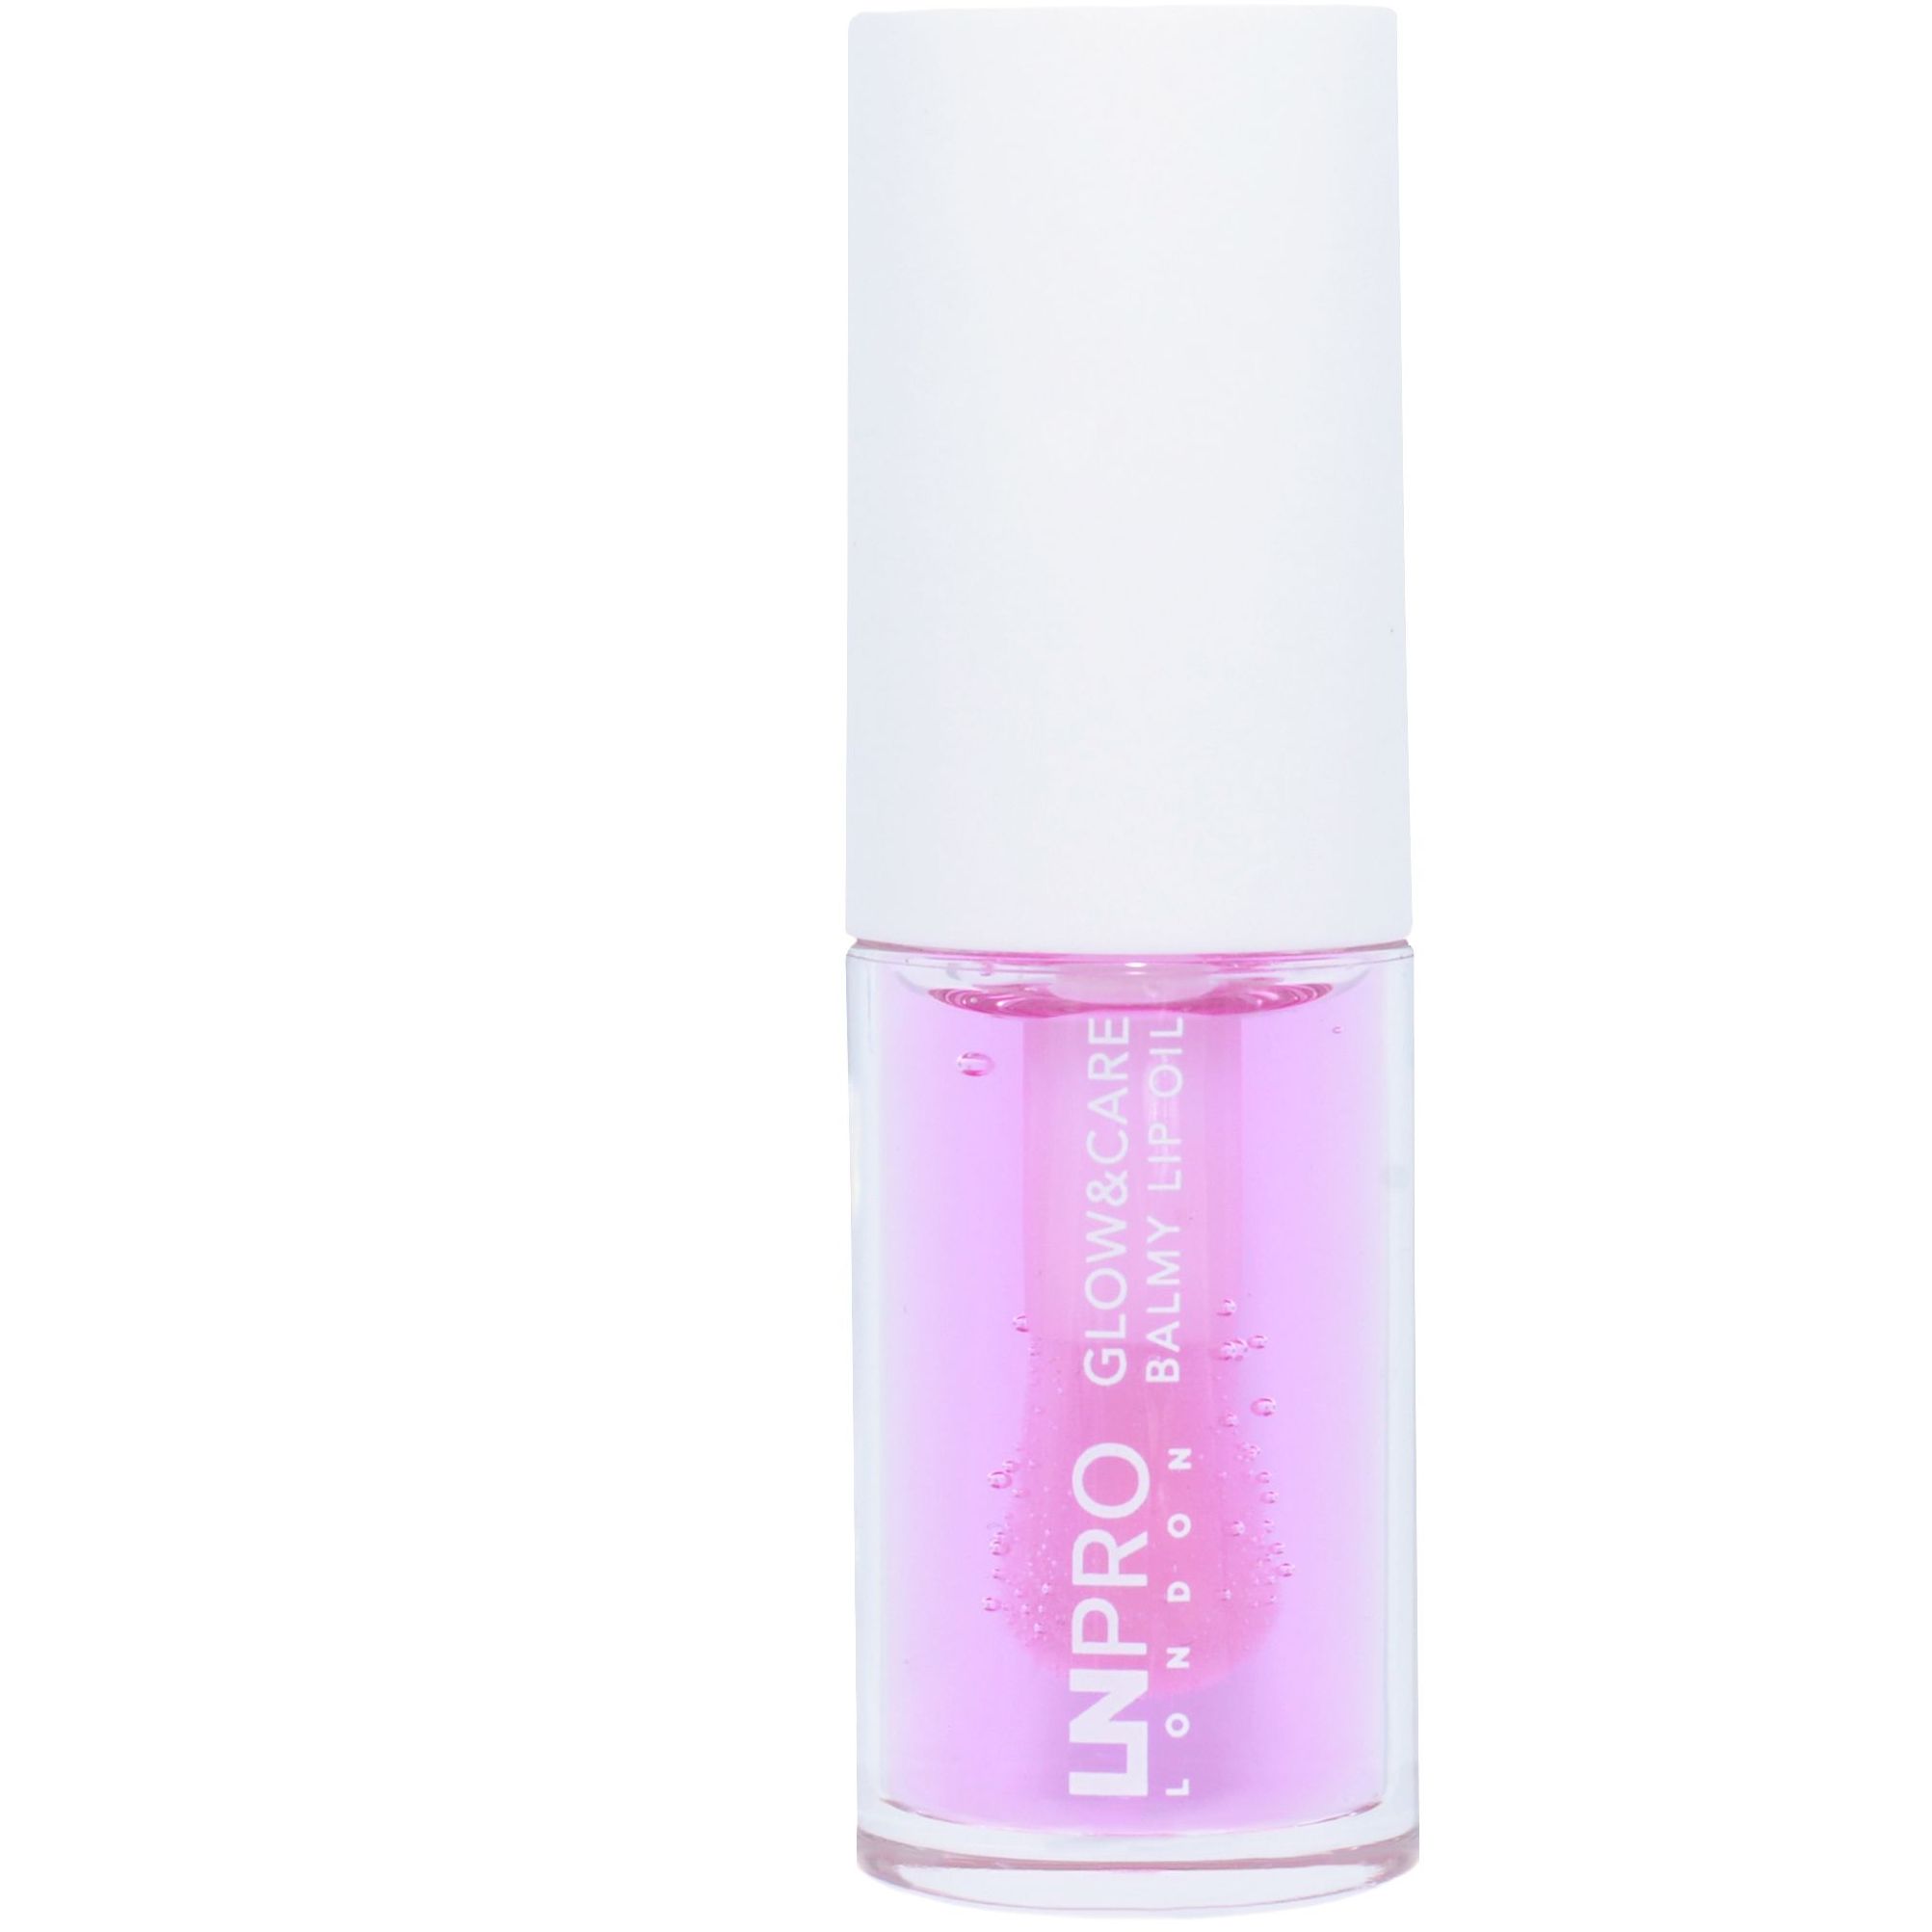 Масло-бальзам для губ LN Pro Glow & Care Balmy Lip Oil тон 104, 3.7 мл - фото 5